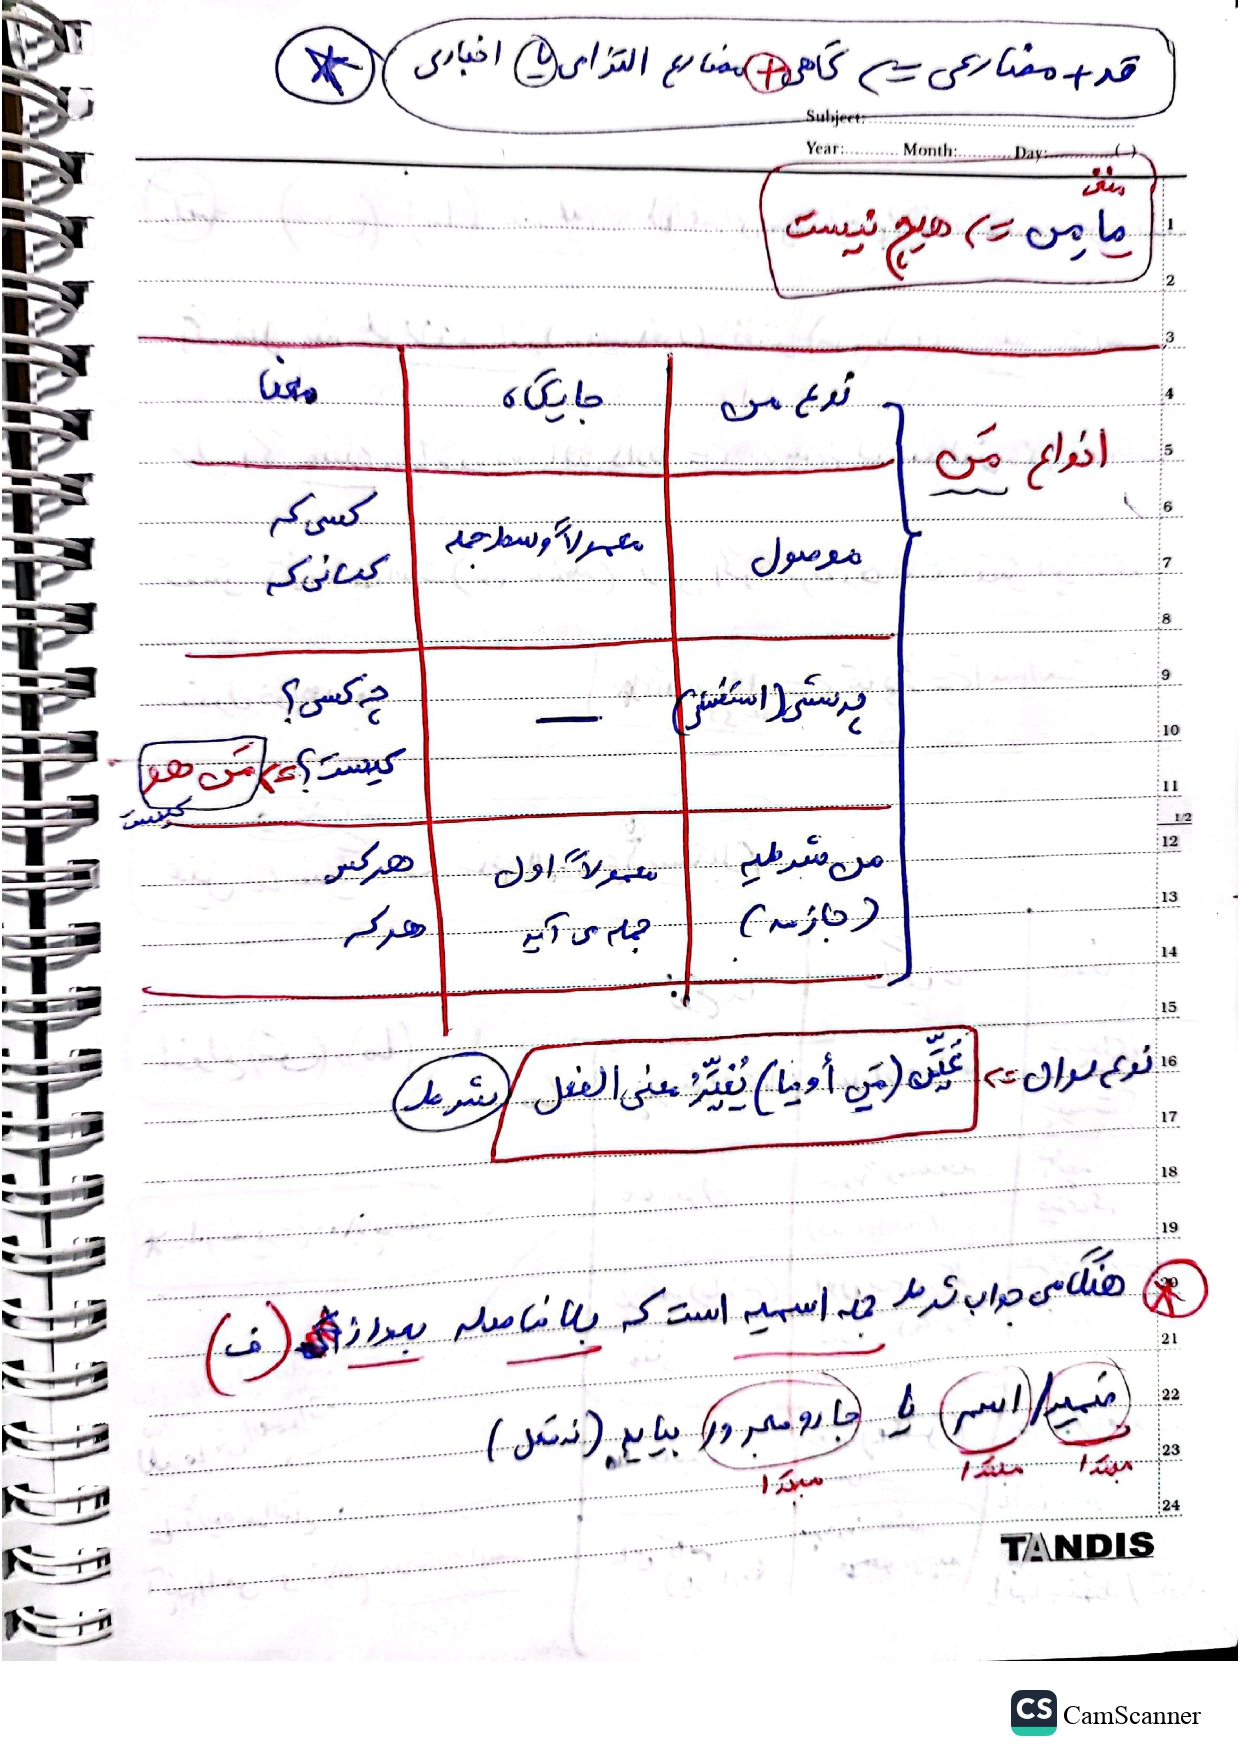 جزوه عربی یازدهم - درس ۳ اسلوب شرط 